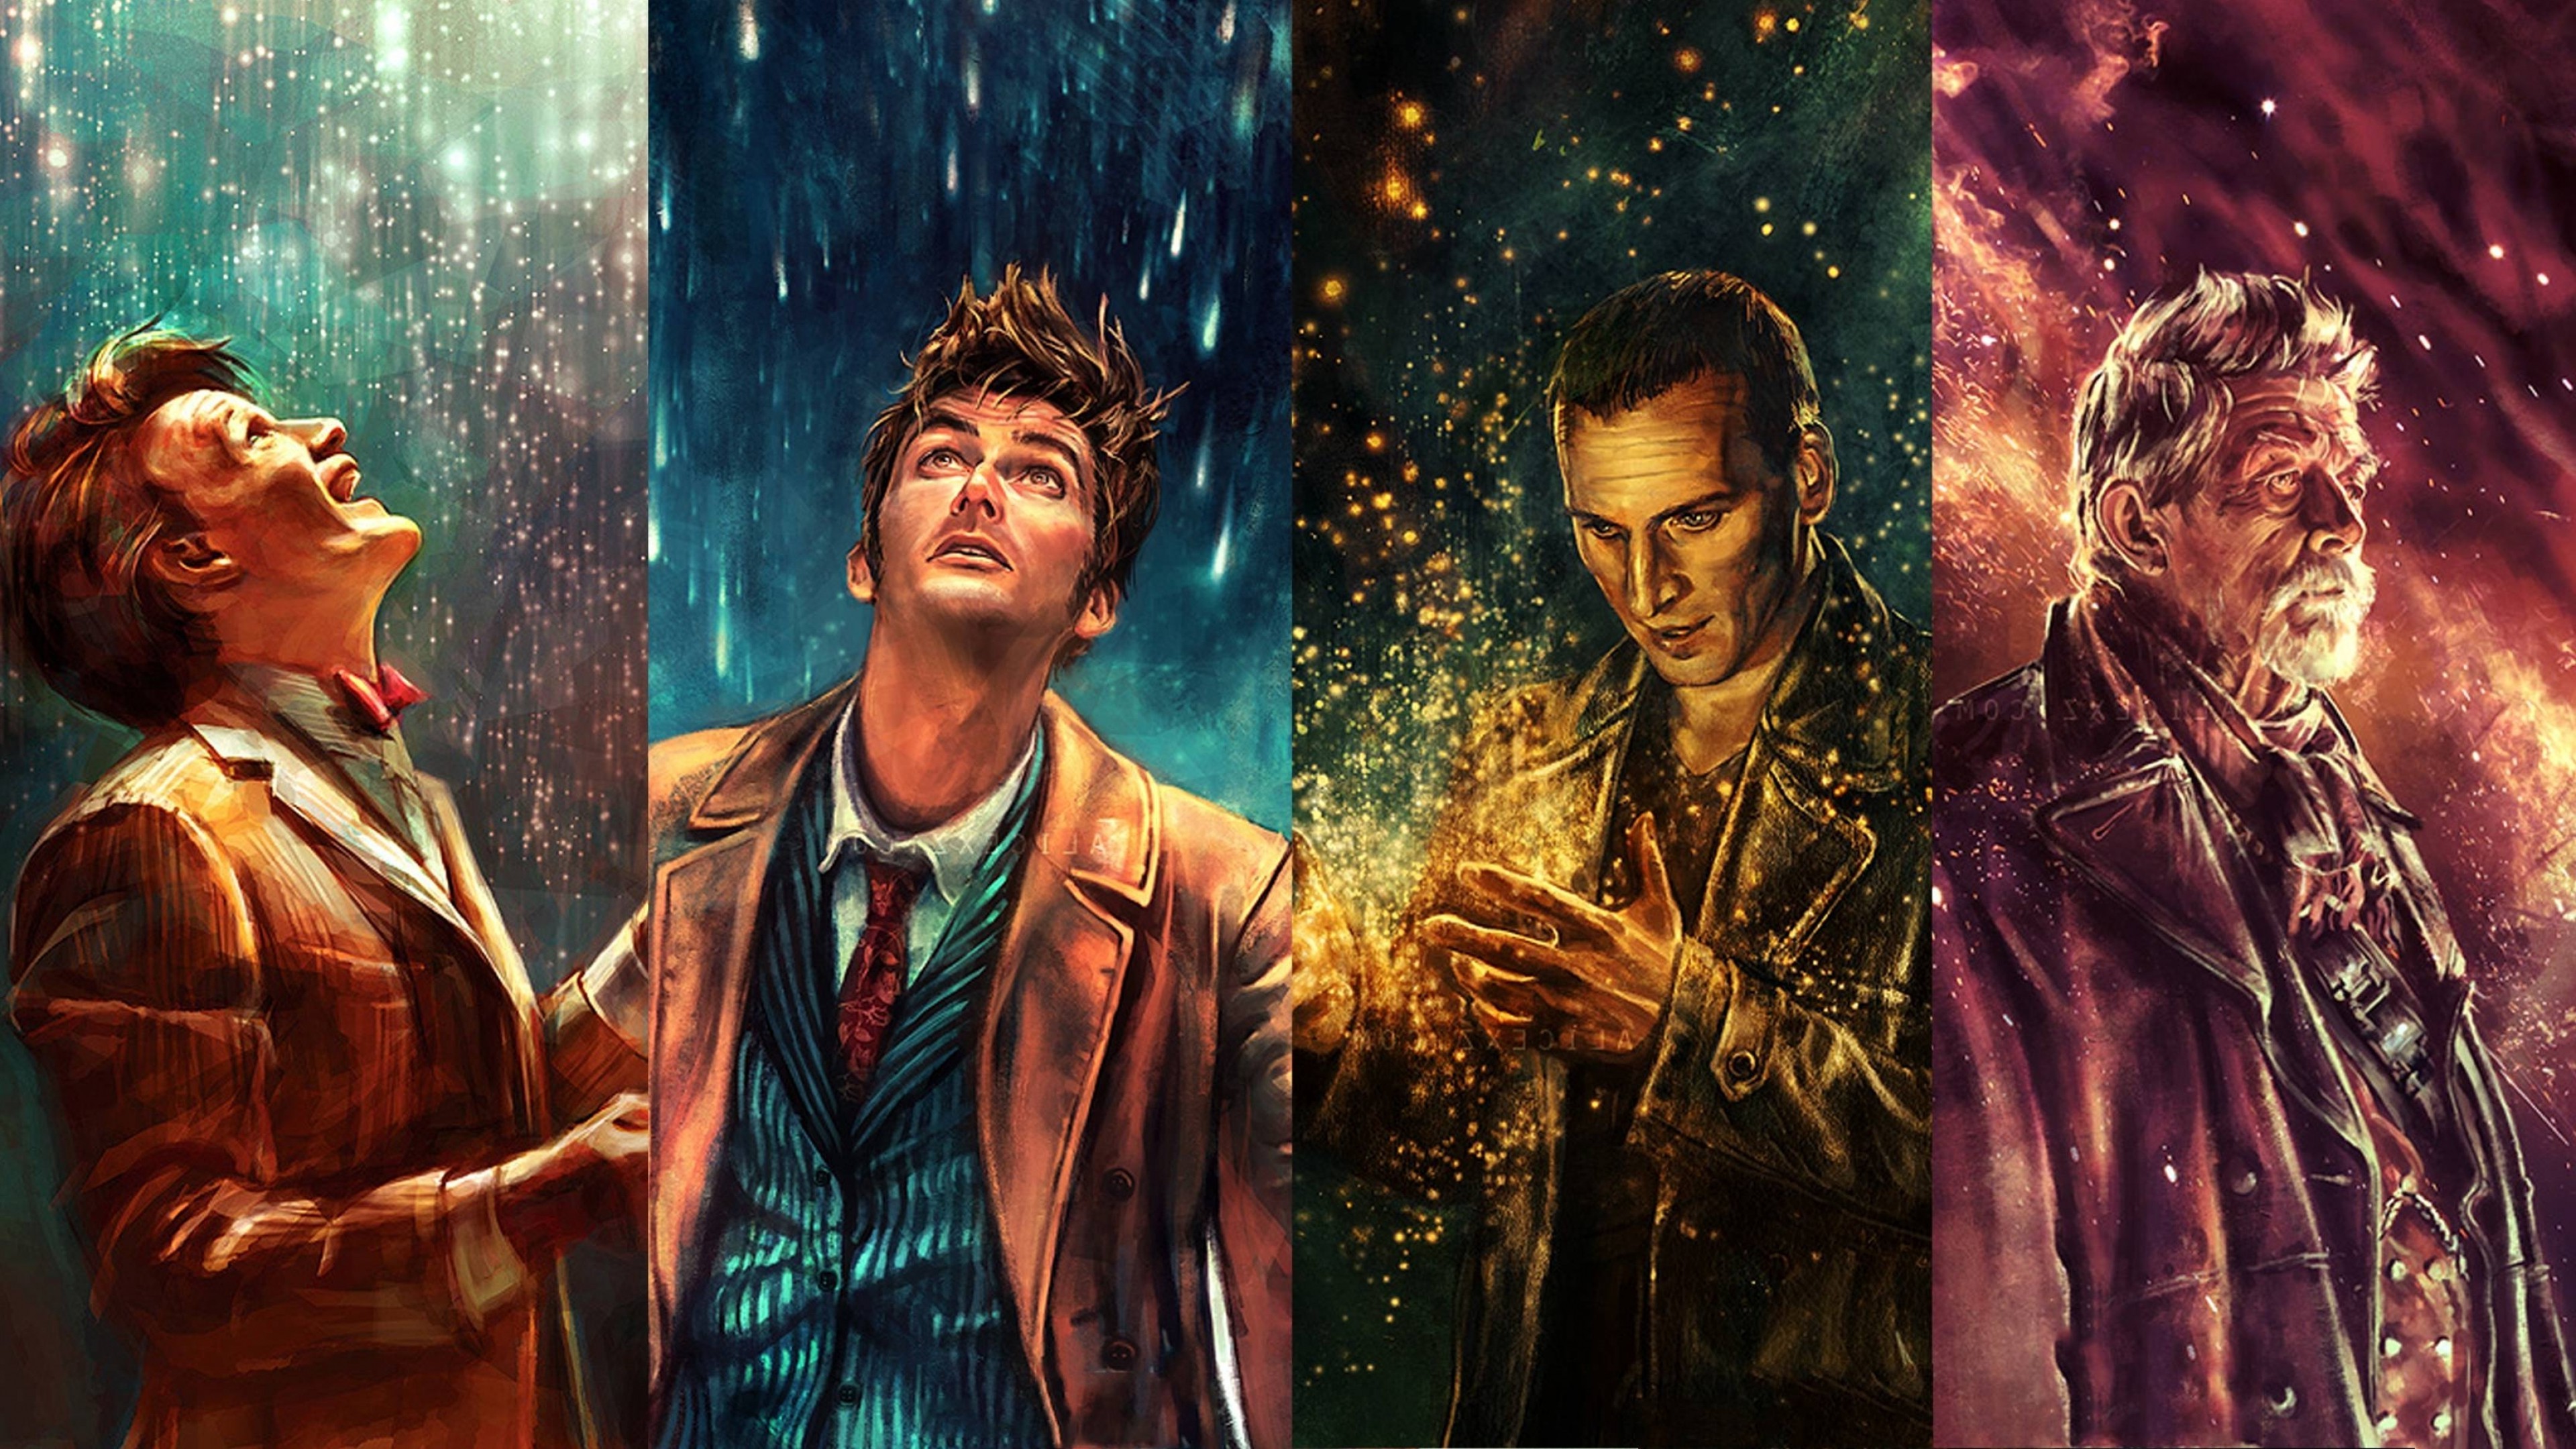 10th doctor wallpaper,juego de acción y aventura,película,humano,cg artwork,personaje de ficción